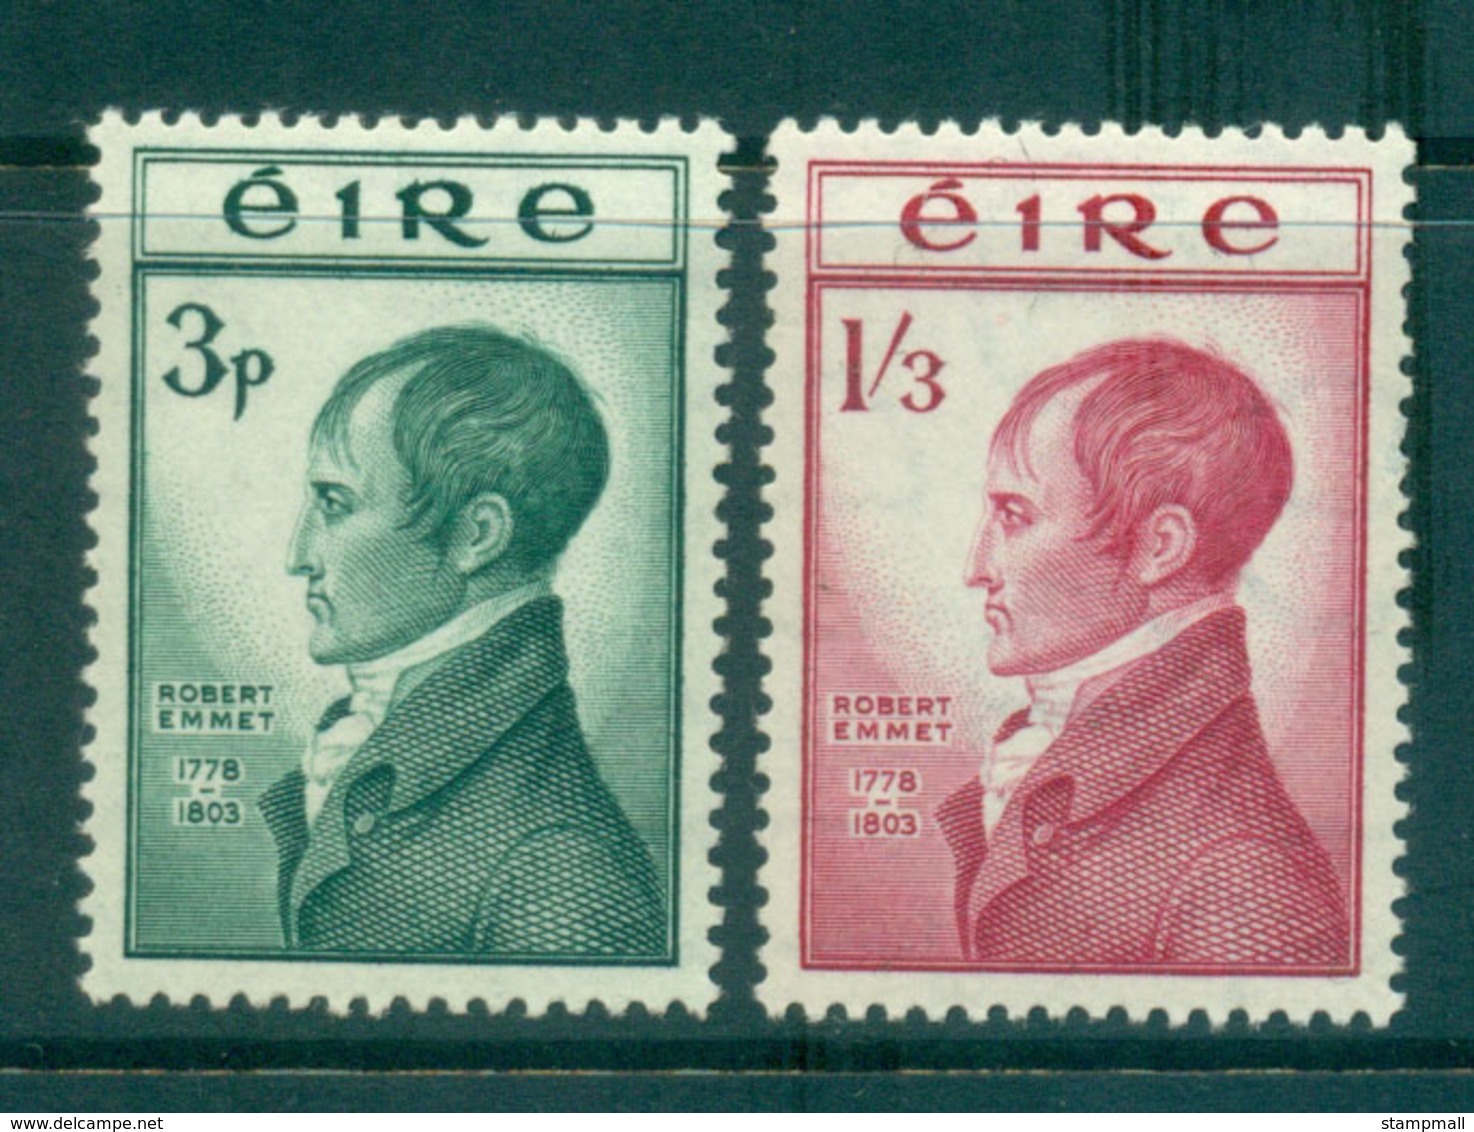 Ireland 1953 Robert Emmet MUH Lot54533 - Used Stamps